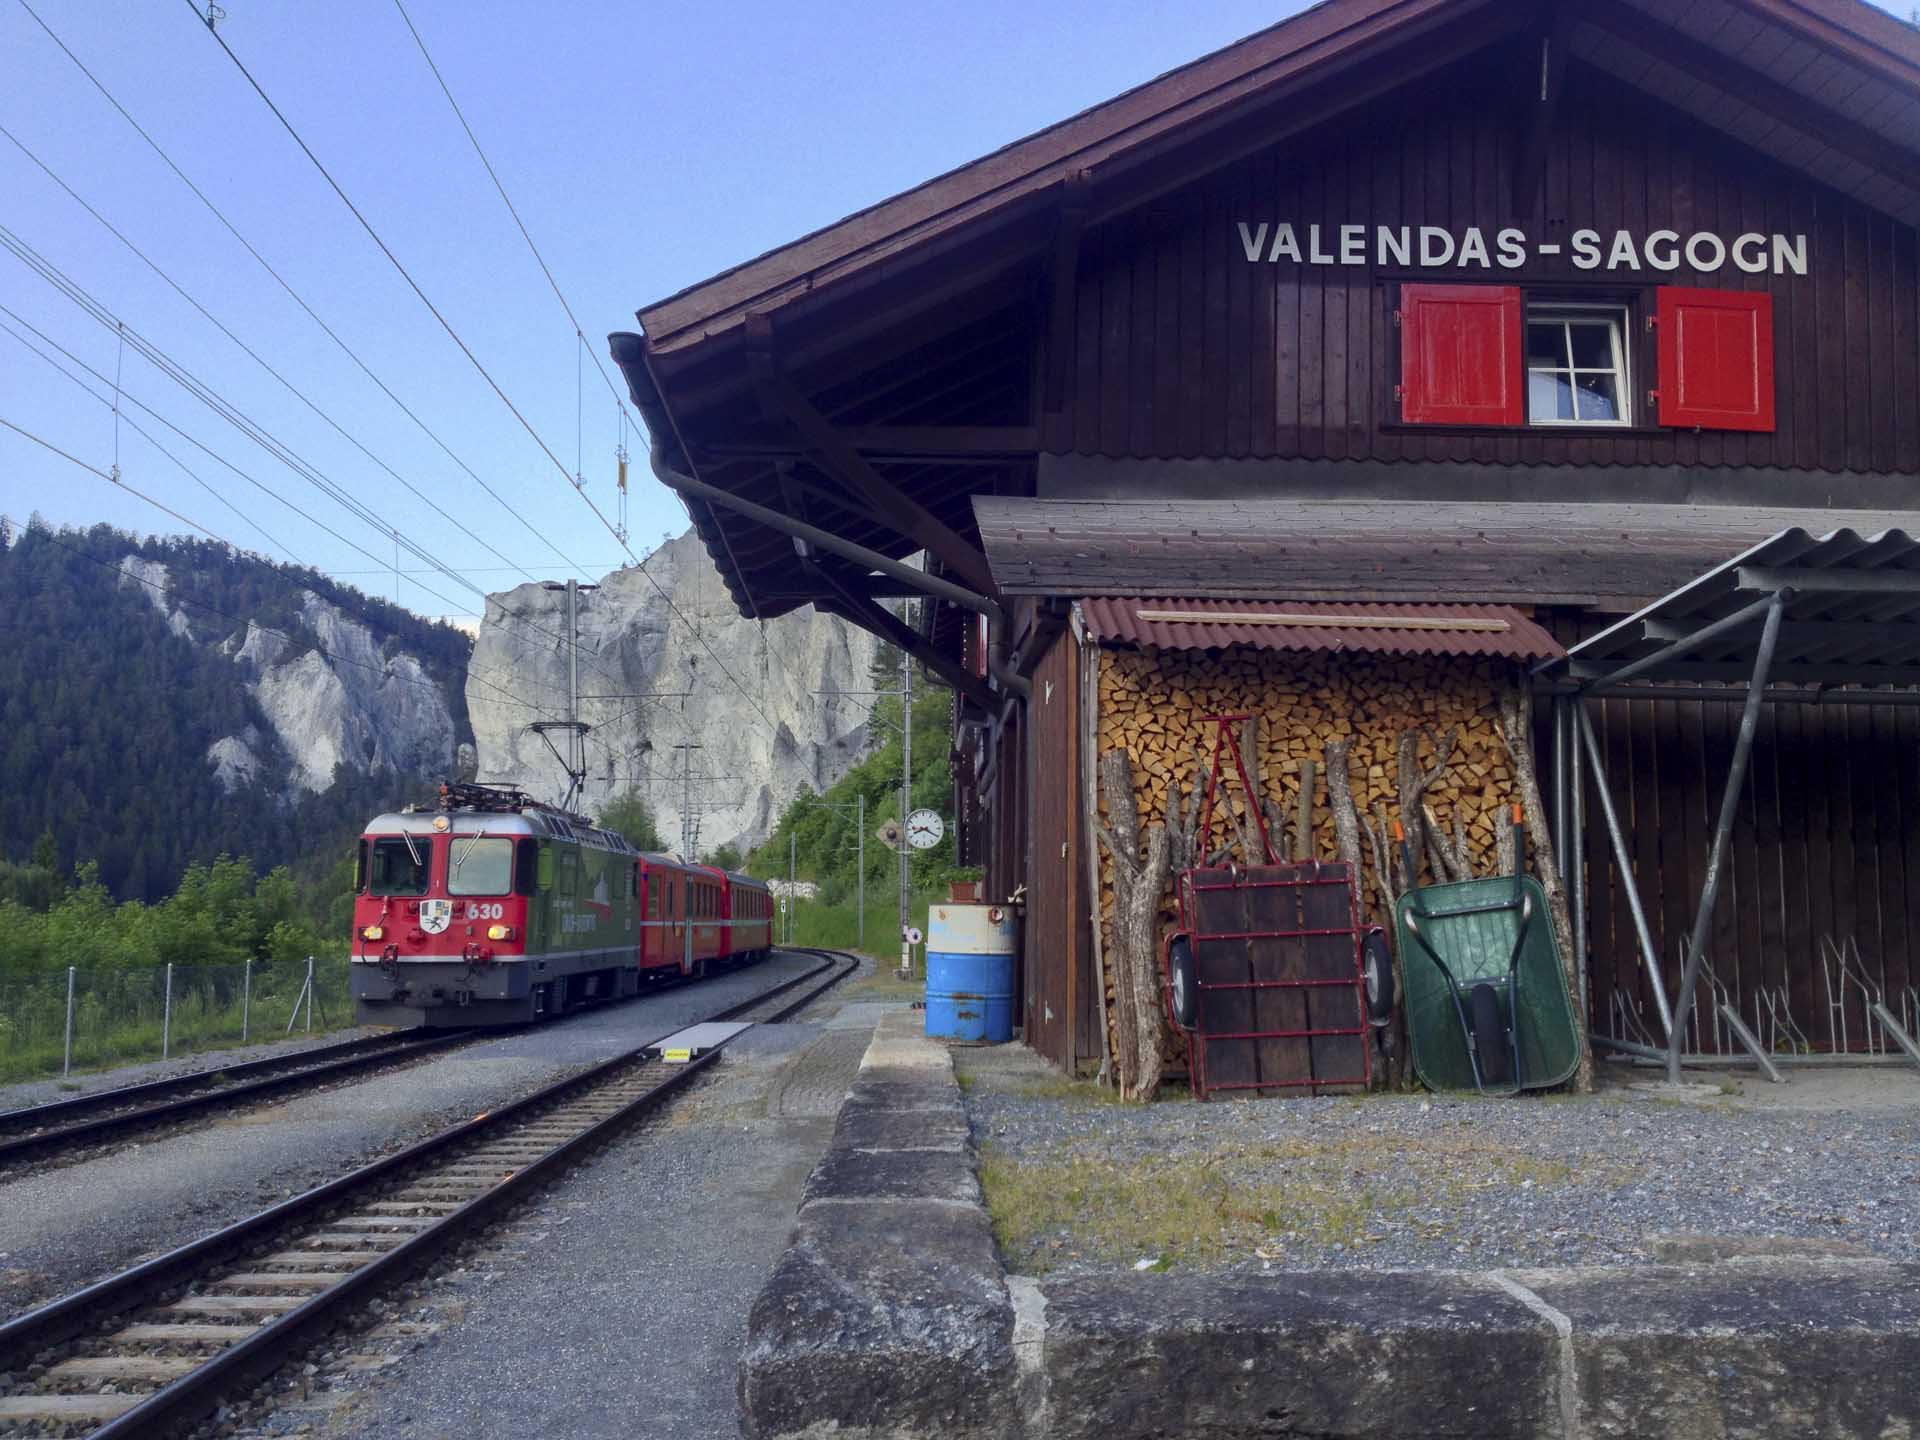 Bahnhof Valendas-Sagogn